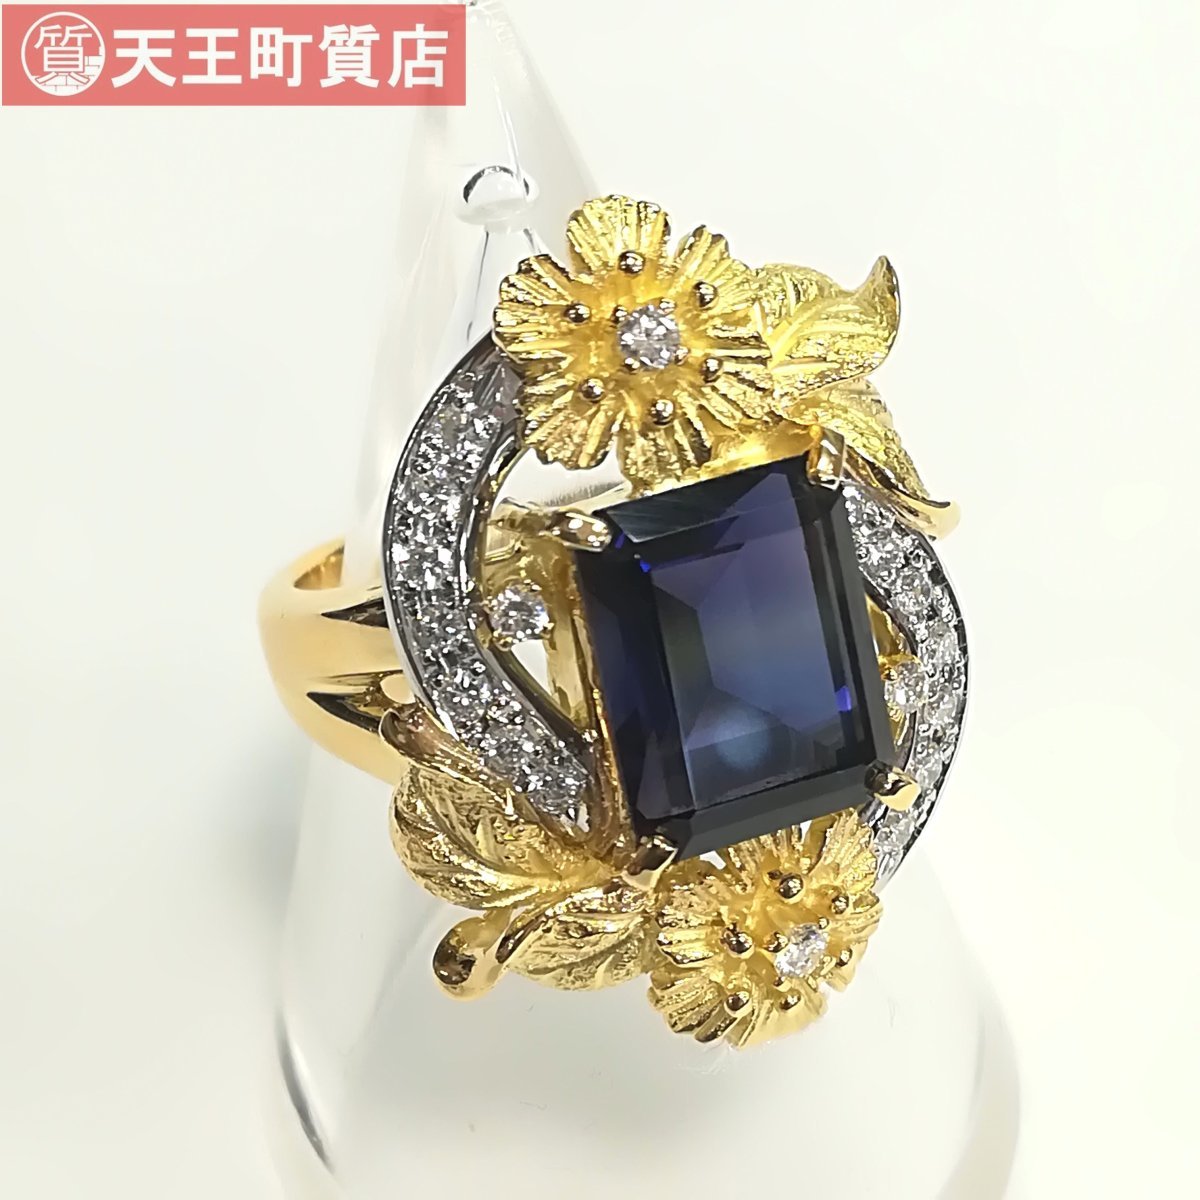 質屋出品【若林 佐代子】リング K18 Pt900 アイオライト ダイヤ デザイン 指輪